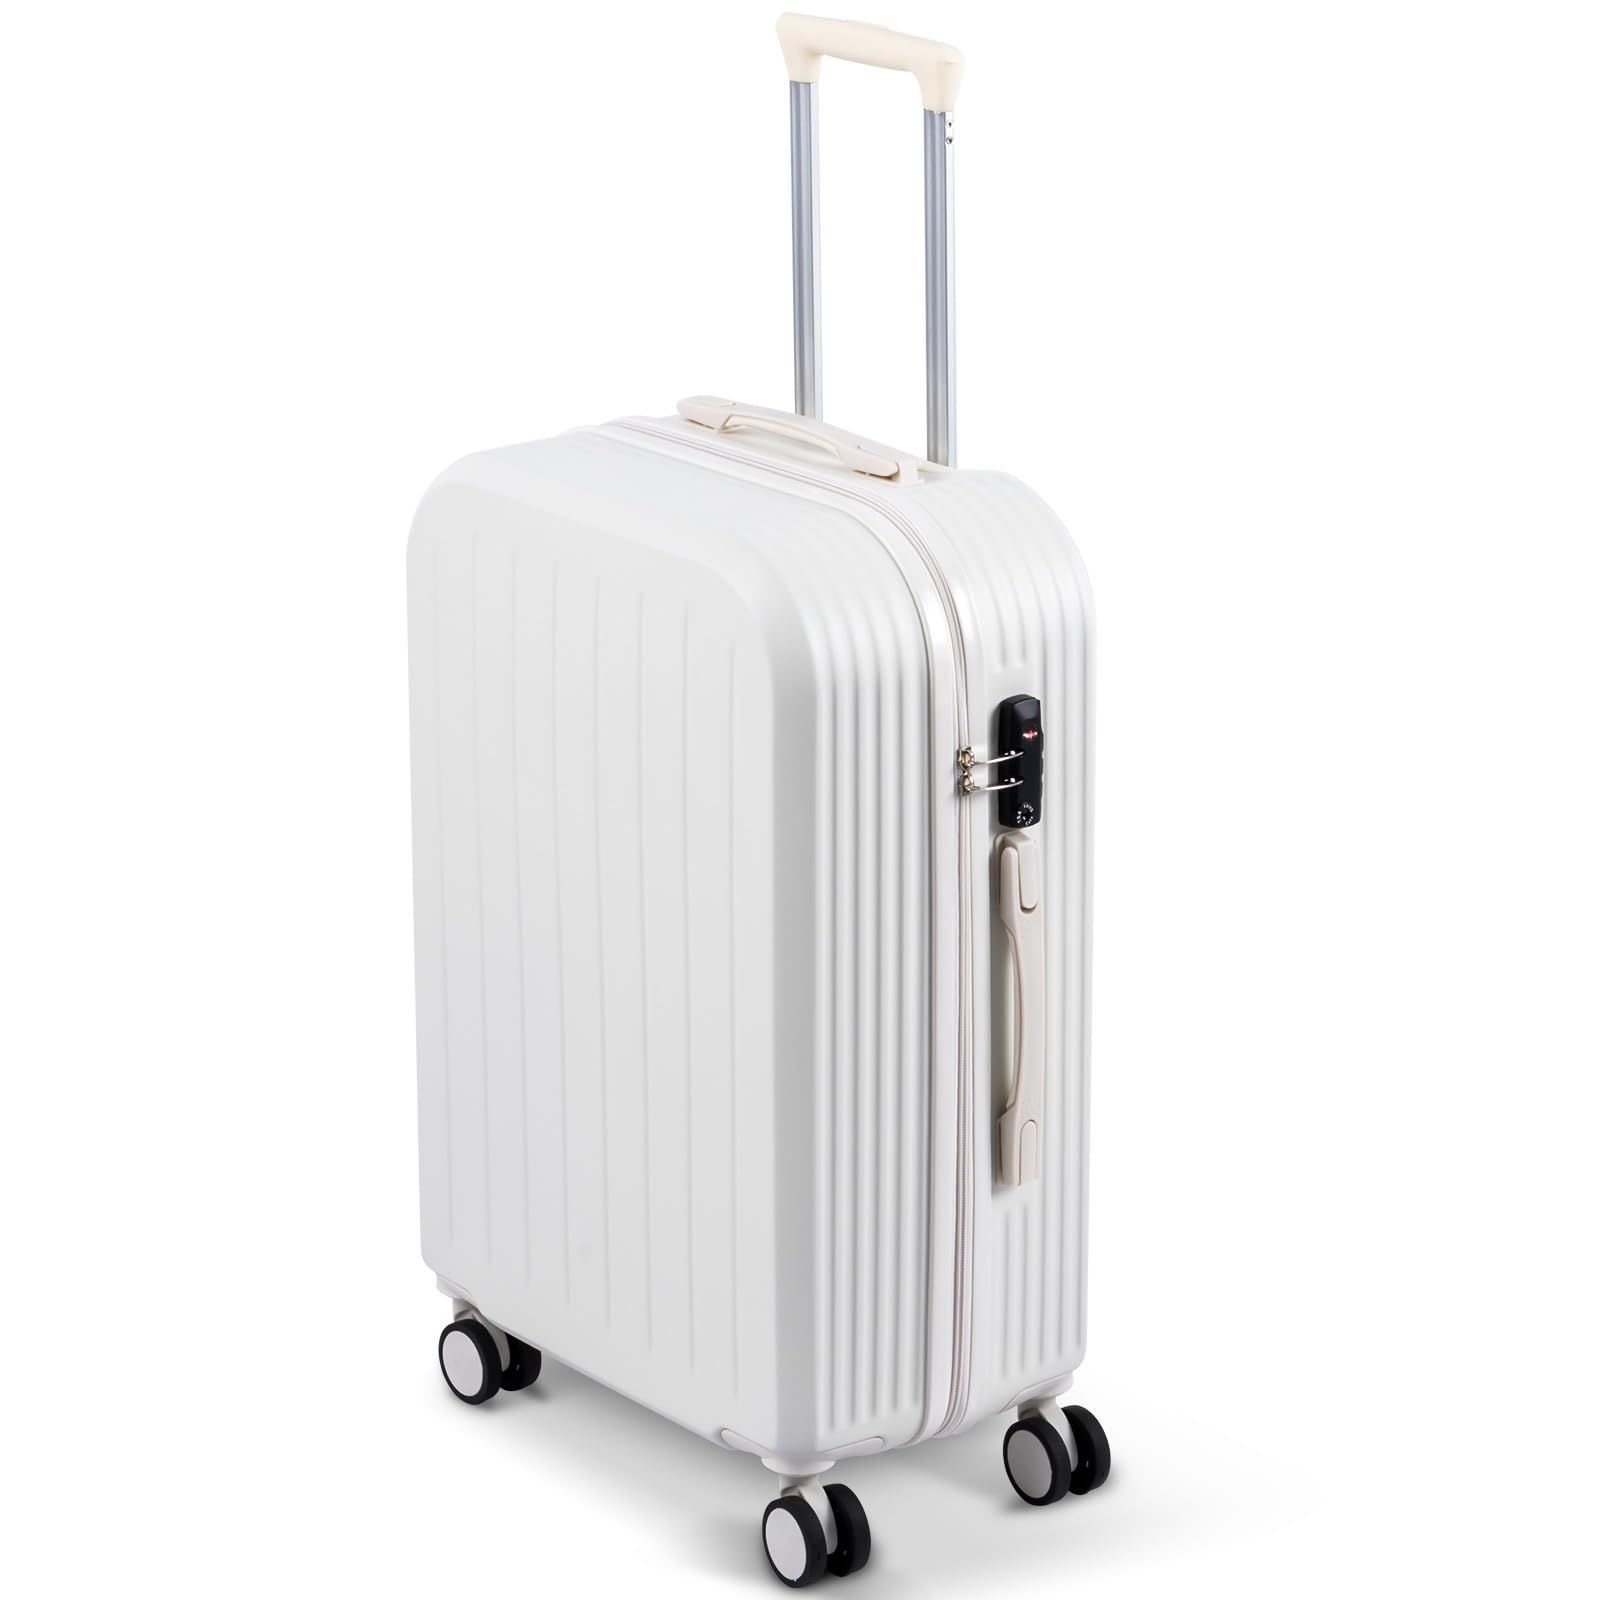 スーツケース キャリーケース 機内持ち込み PC材質 超軽量 大容量 TSAロック 静音 360回転 Sサイズ 出張 旅行バック